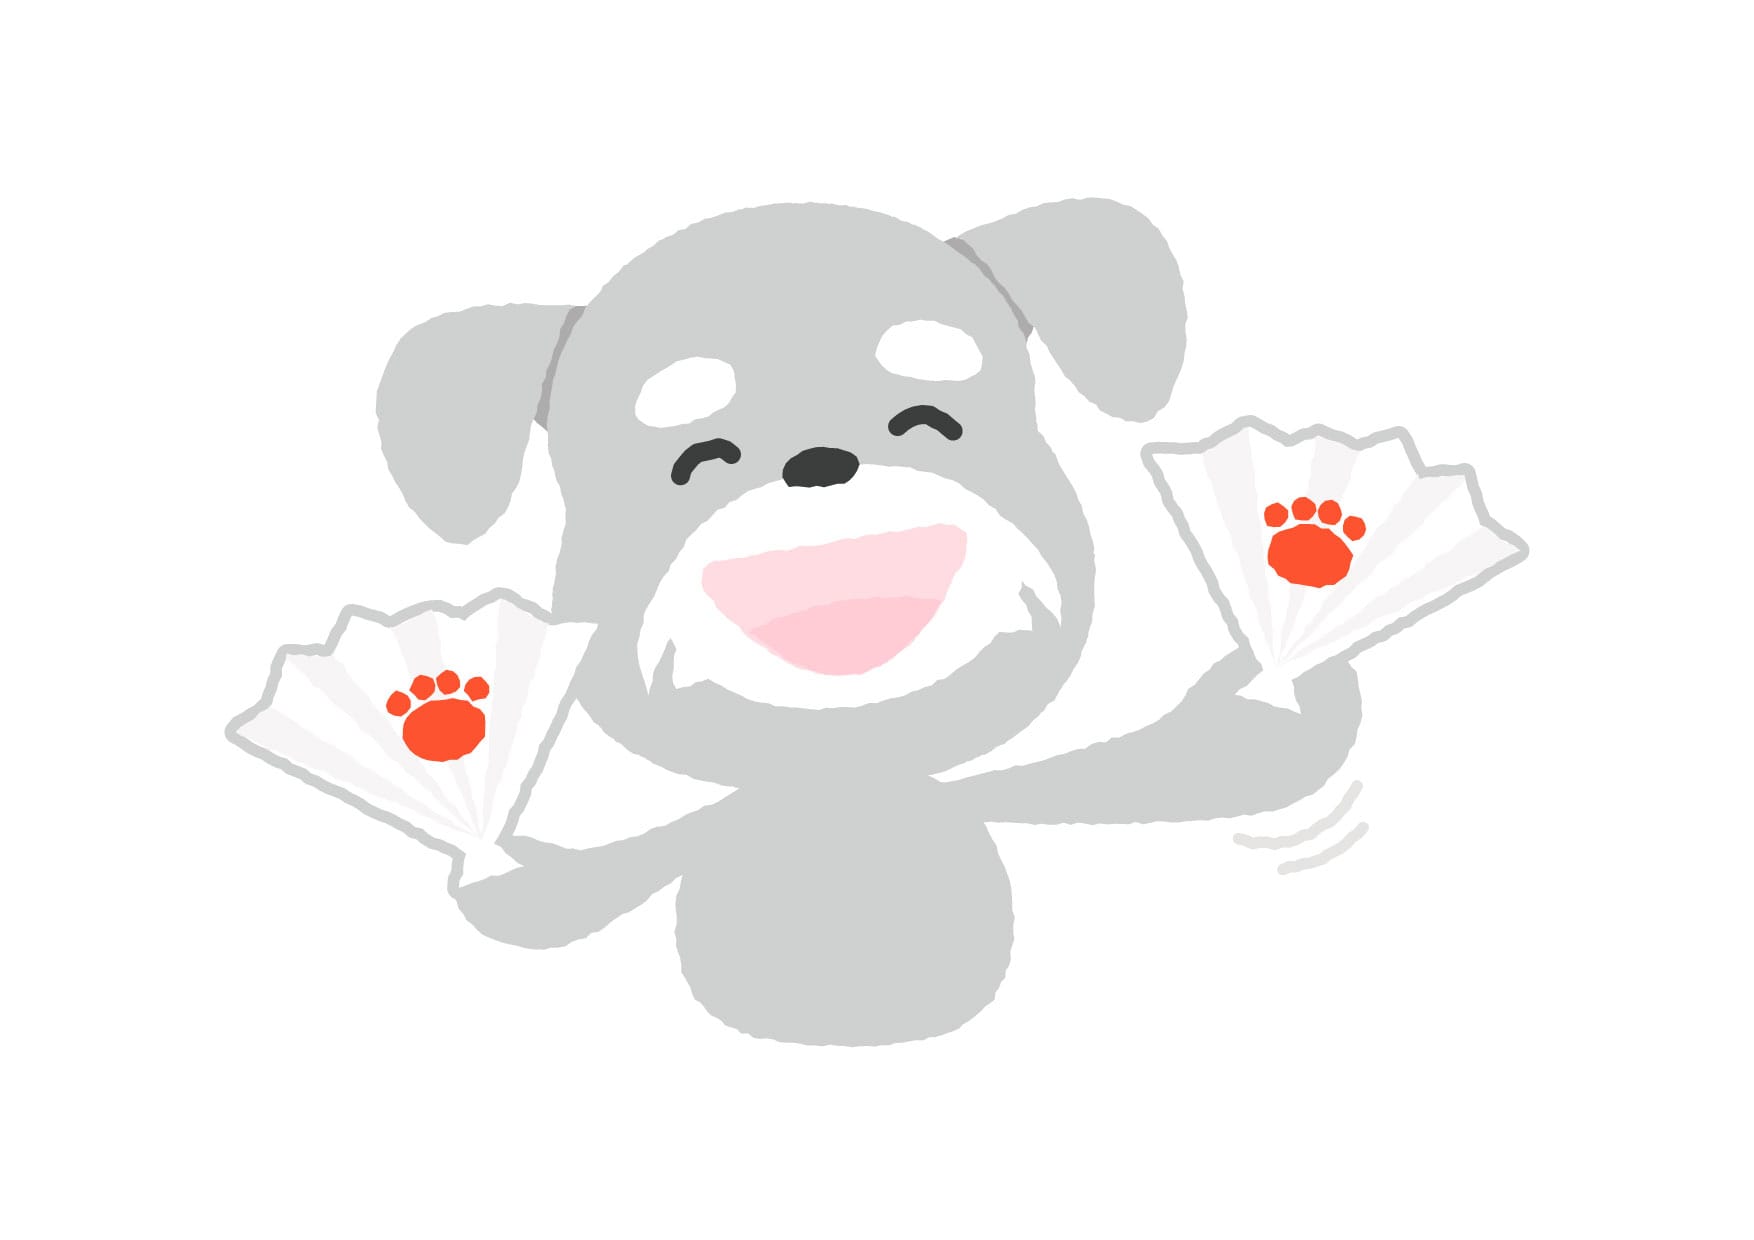 可愛いイラスト無料 犬 応援 Free Illustration Dog Cheering 公式 イラストダウンロード